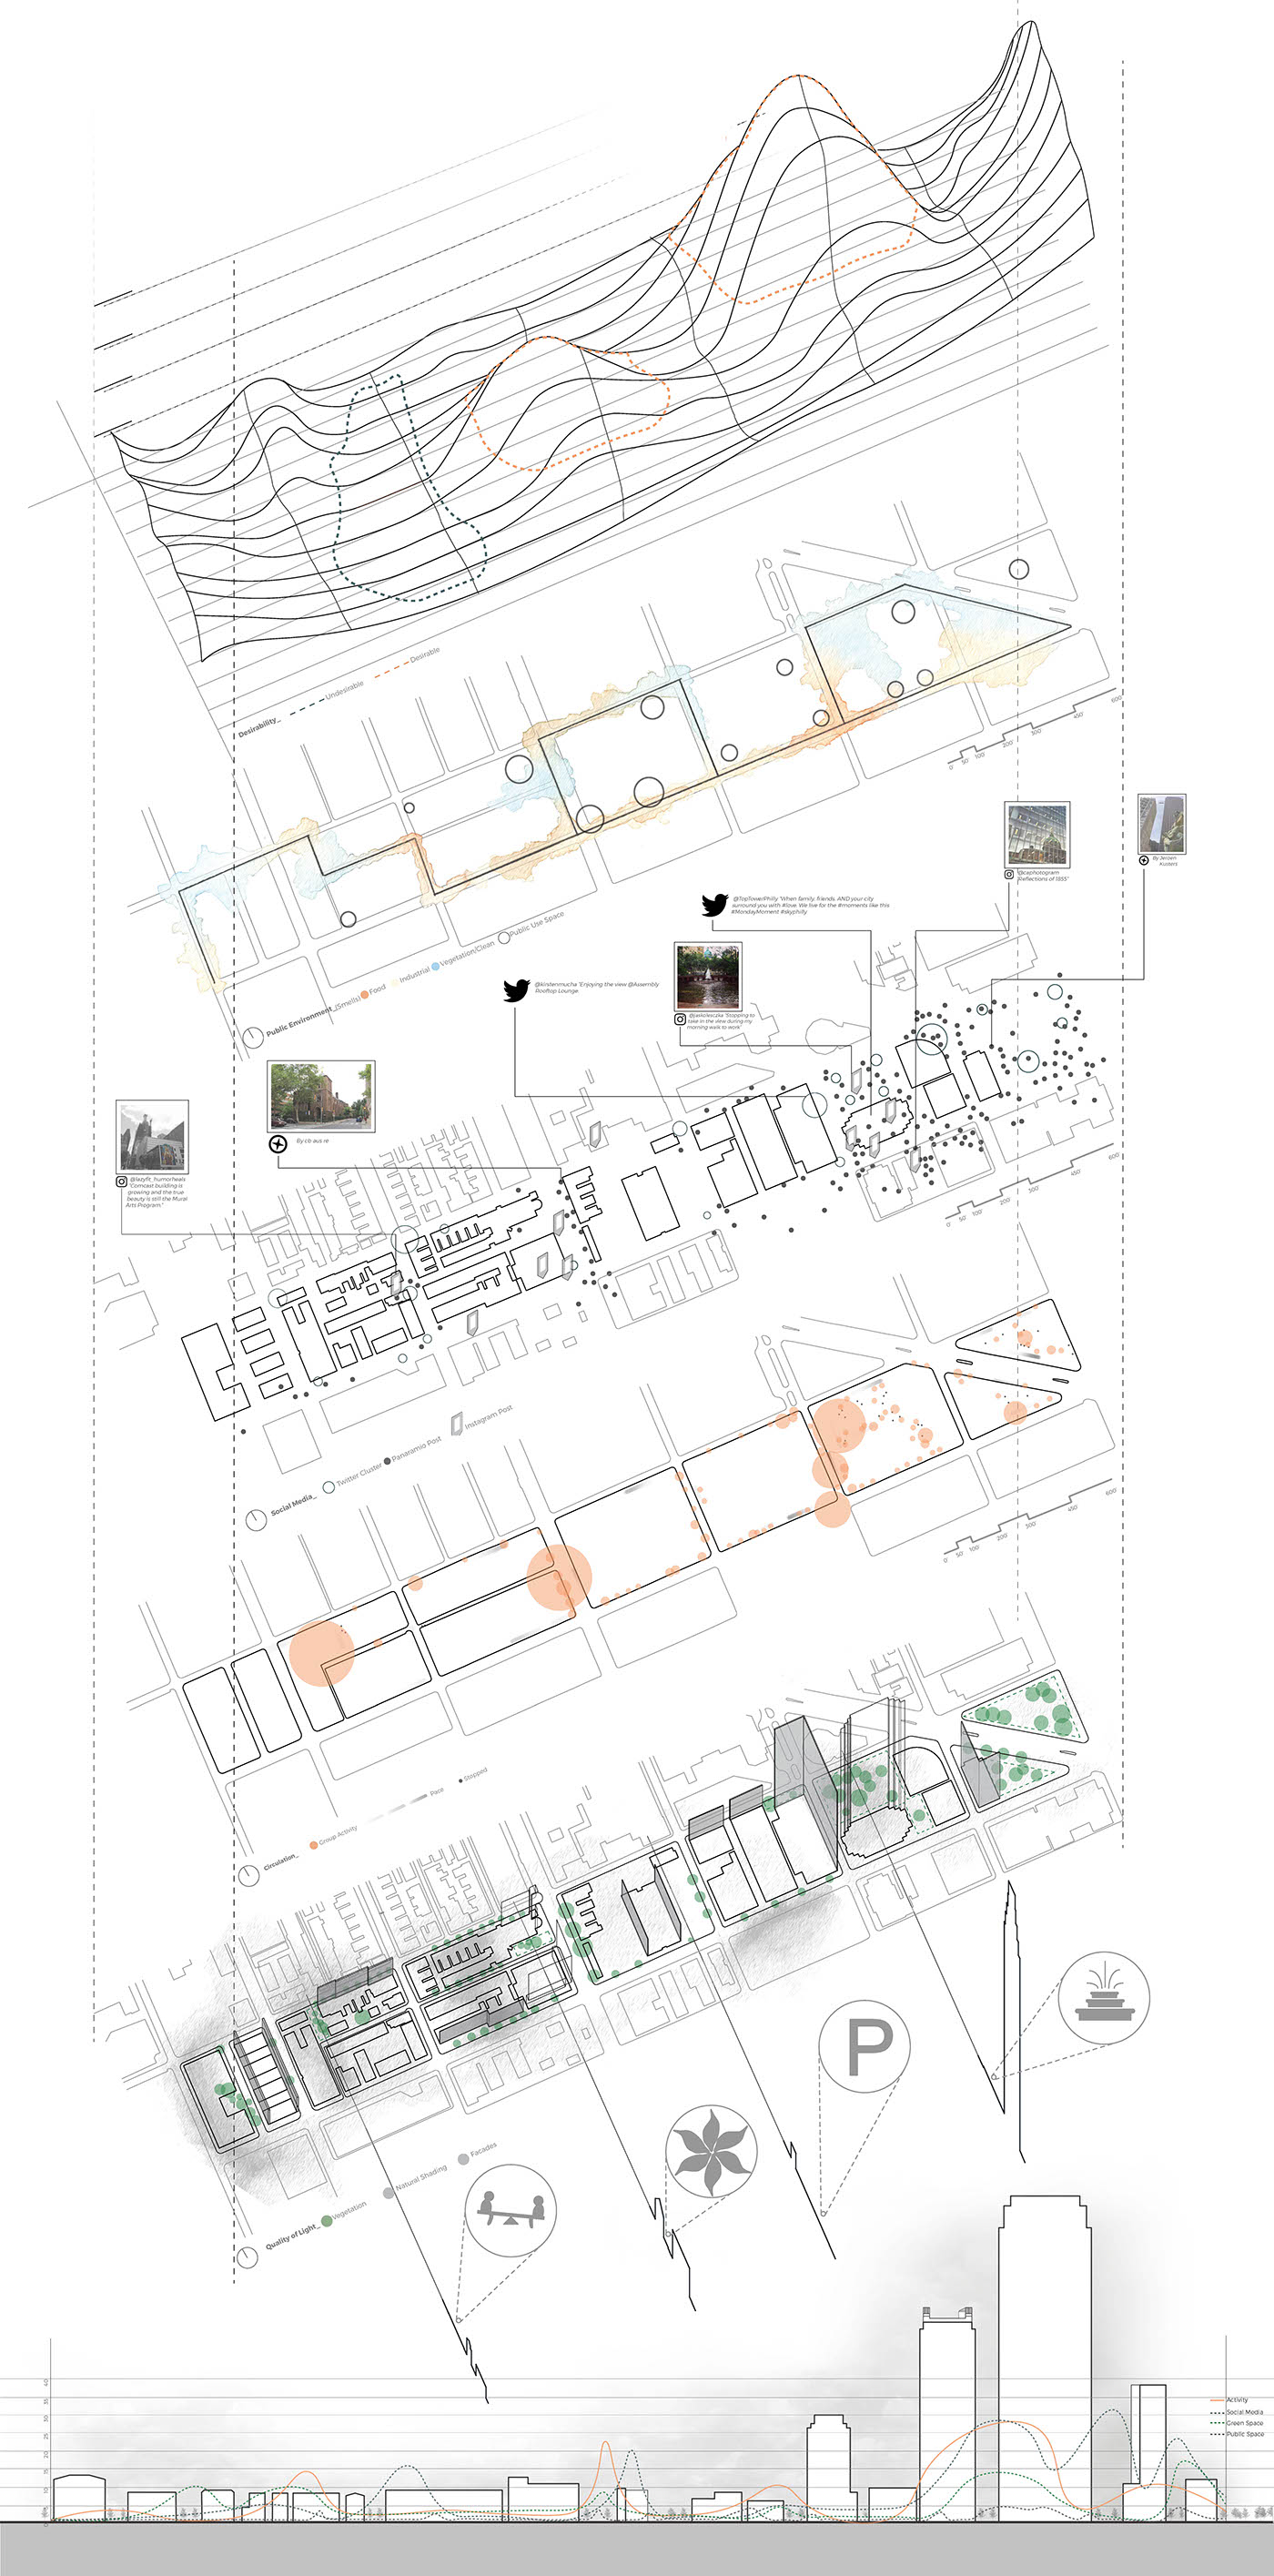 architecture urban planning urban research development